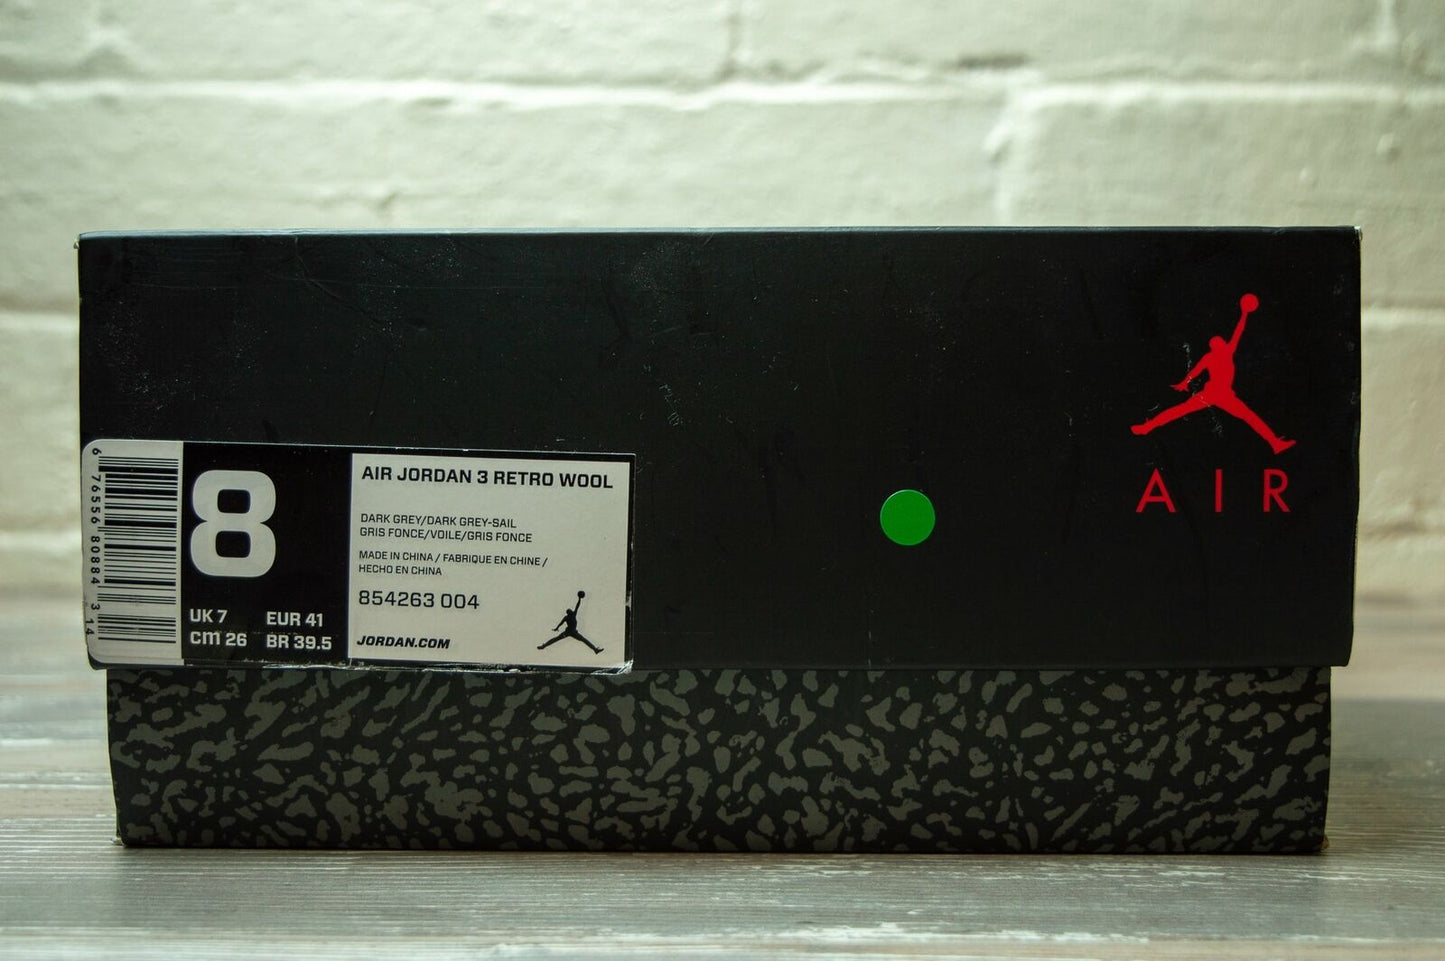 Nike Air Jordan 3 Retro Wool 854263 004 -Nike Air Jordan 3 Retro Wool 854263 004 -